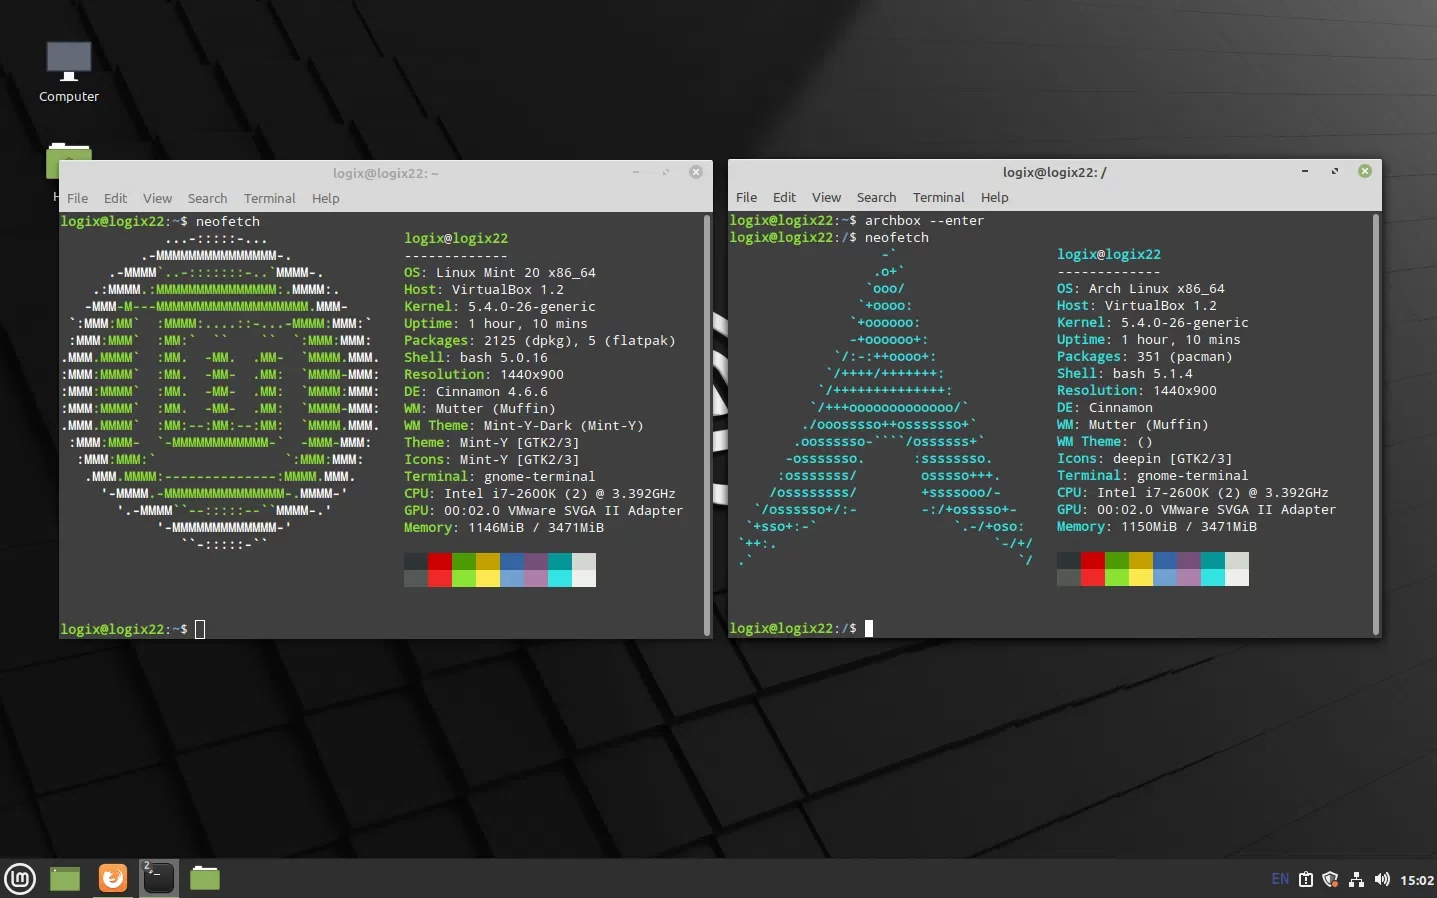 Archbox Arch Linux